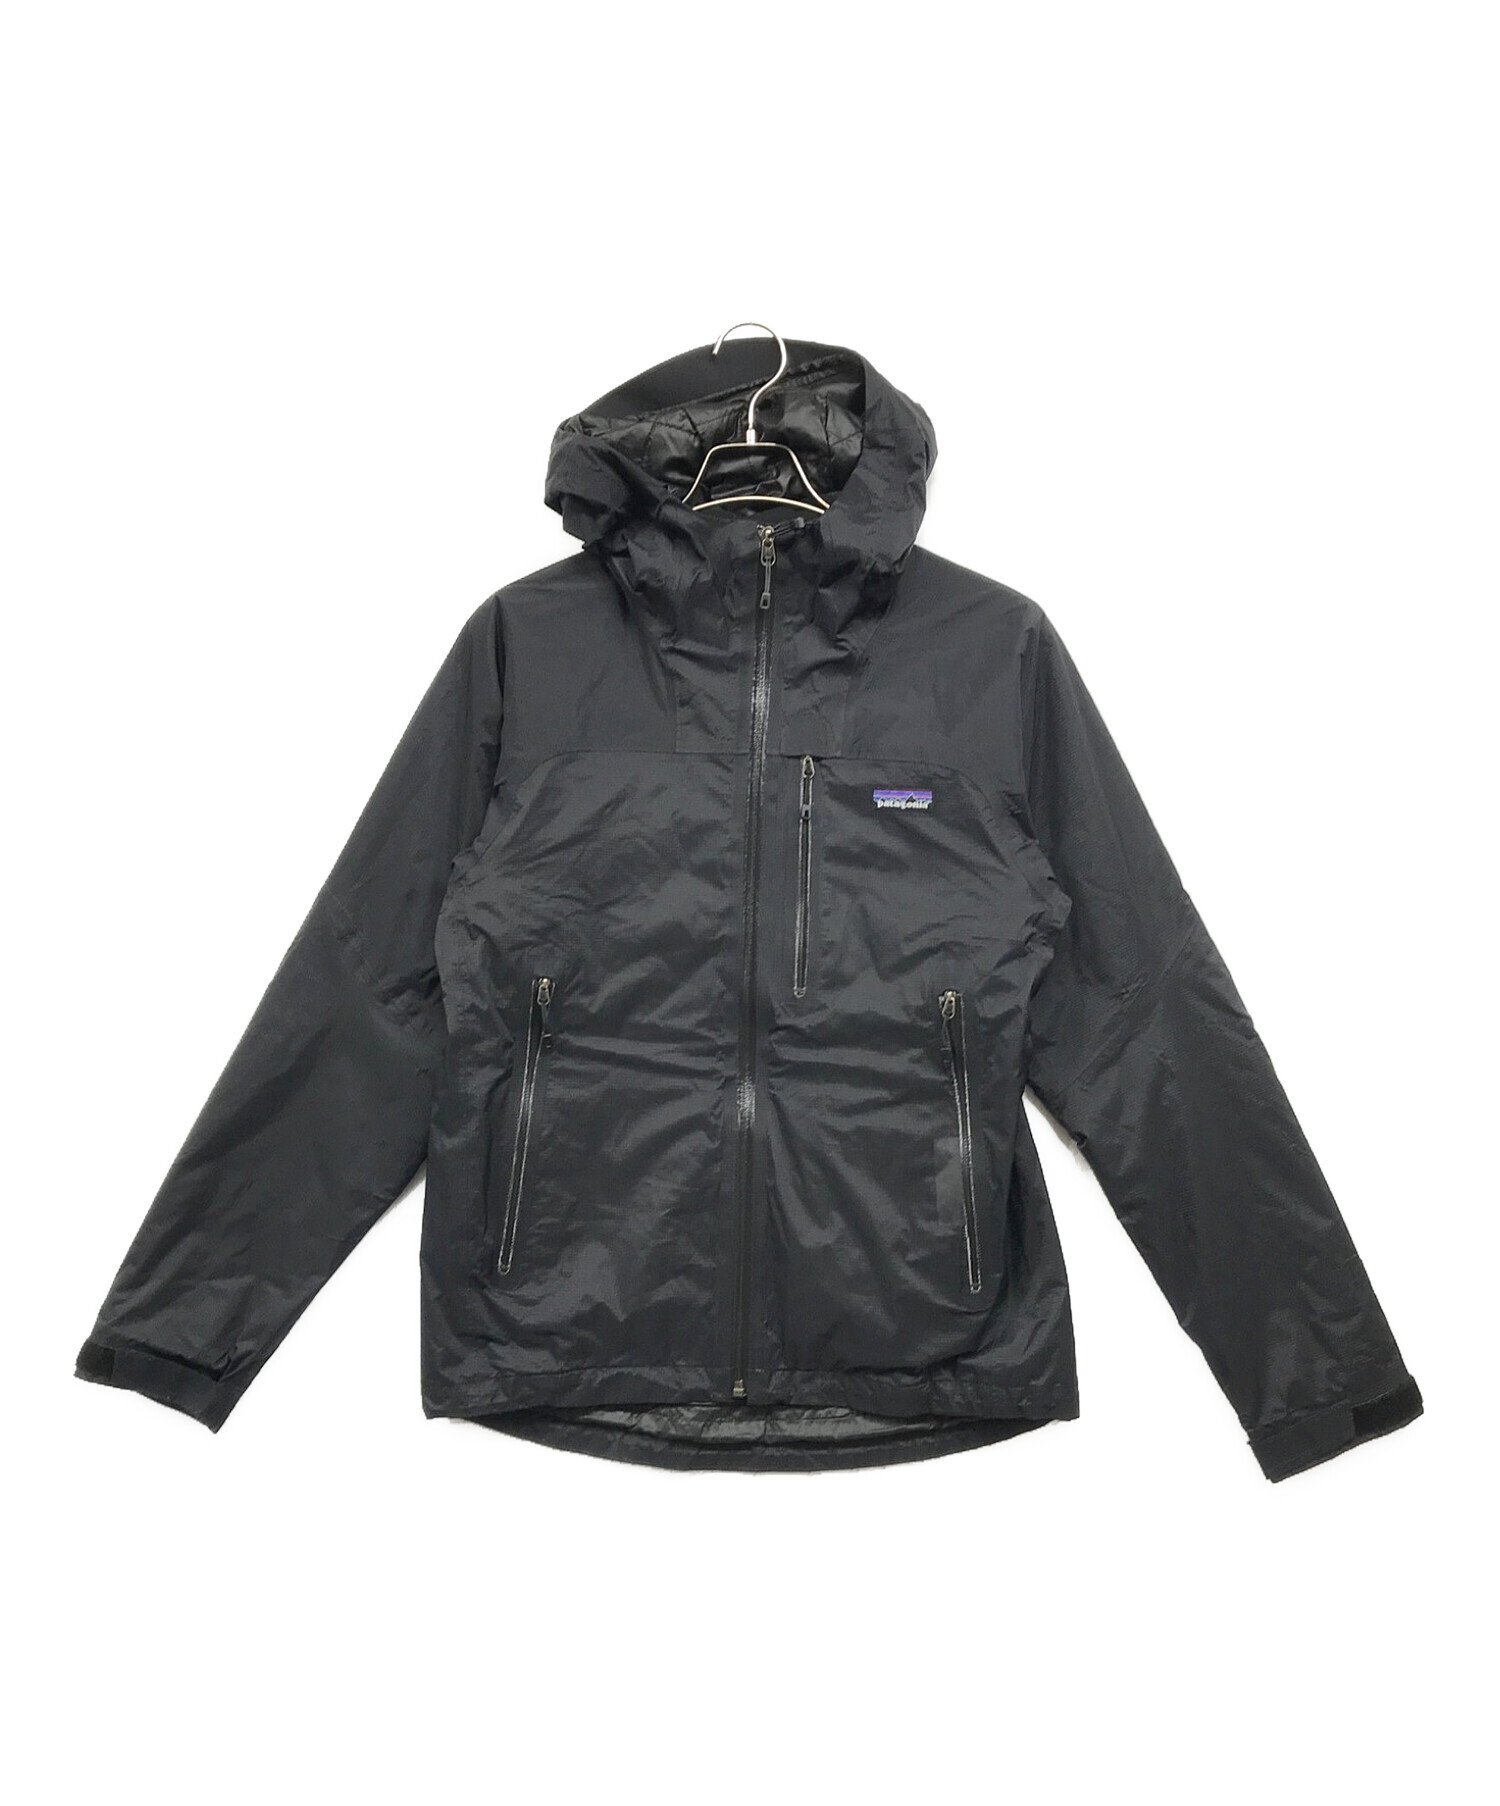 〔ジャンク品〕Patagonia ストームジャケット ブラック サイズL